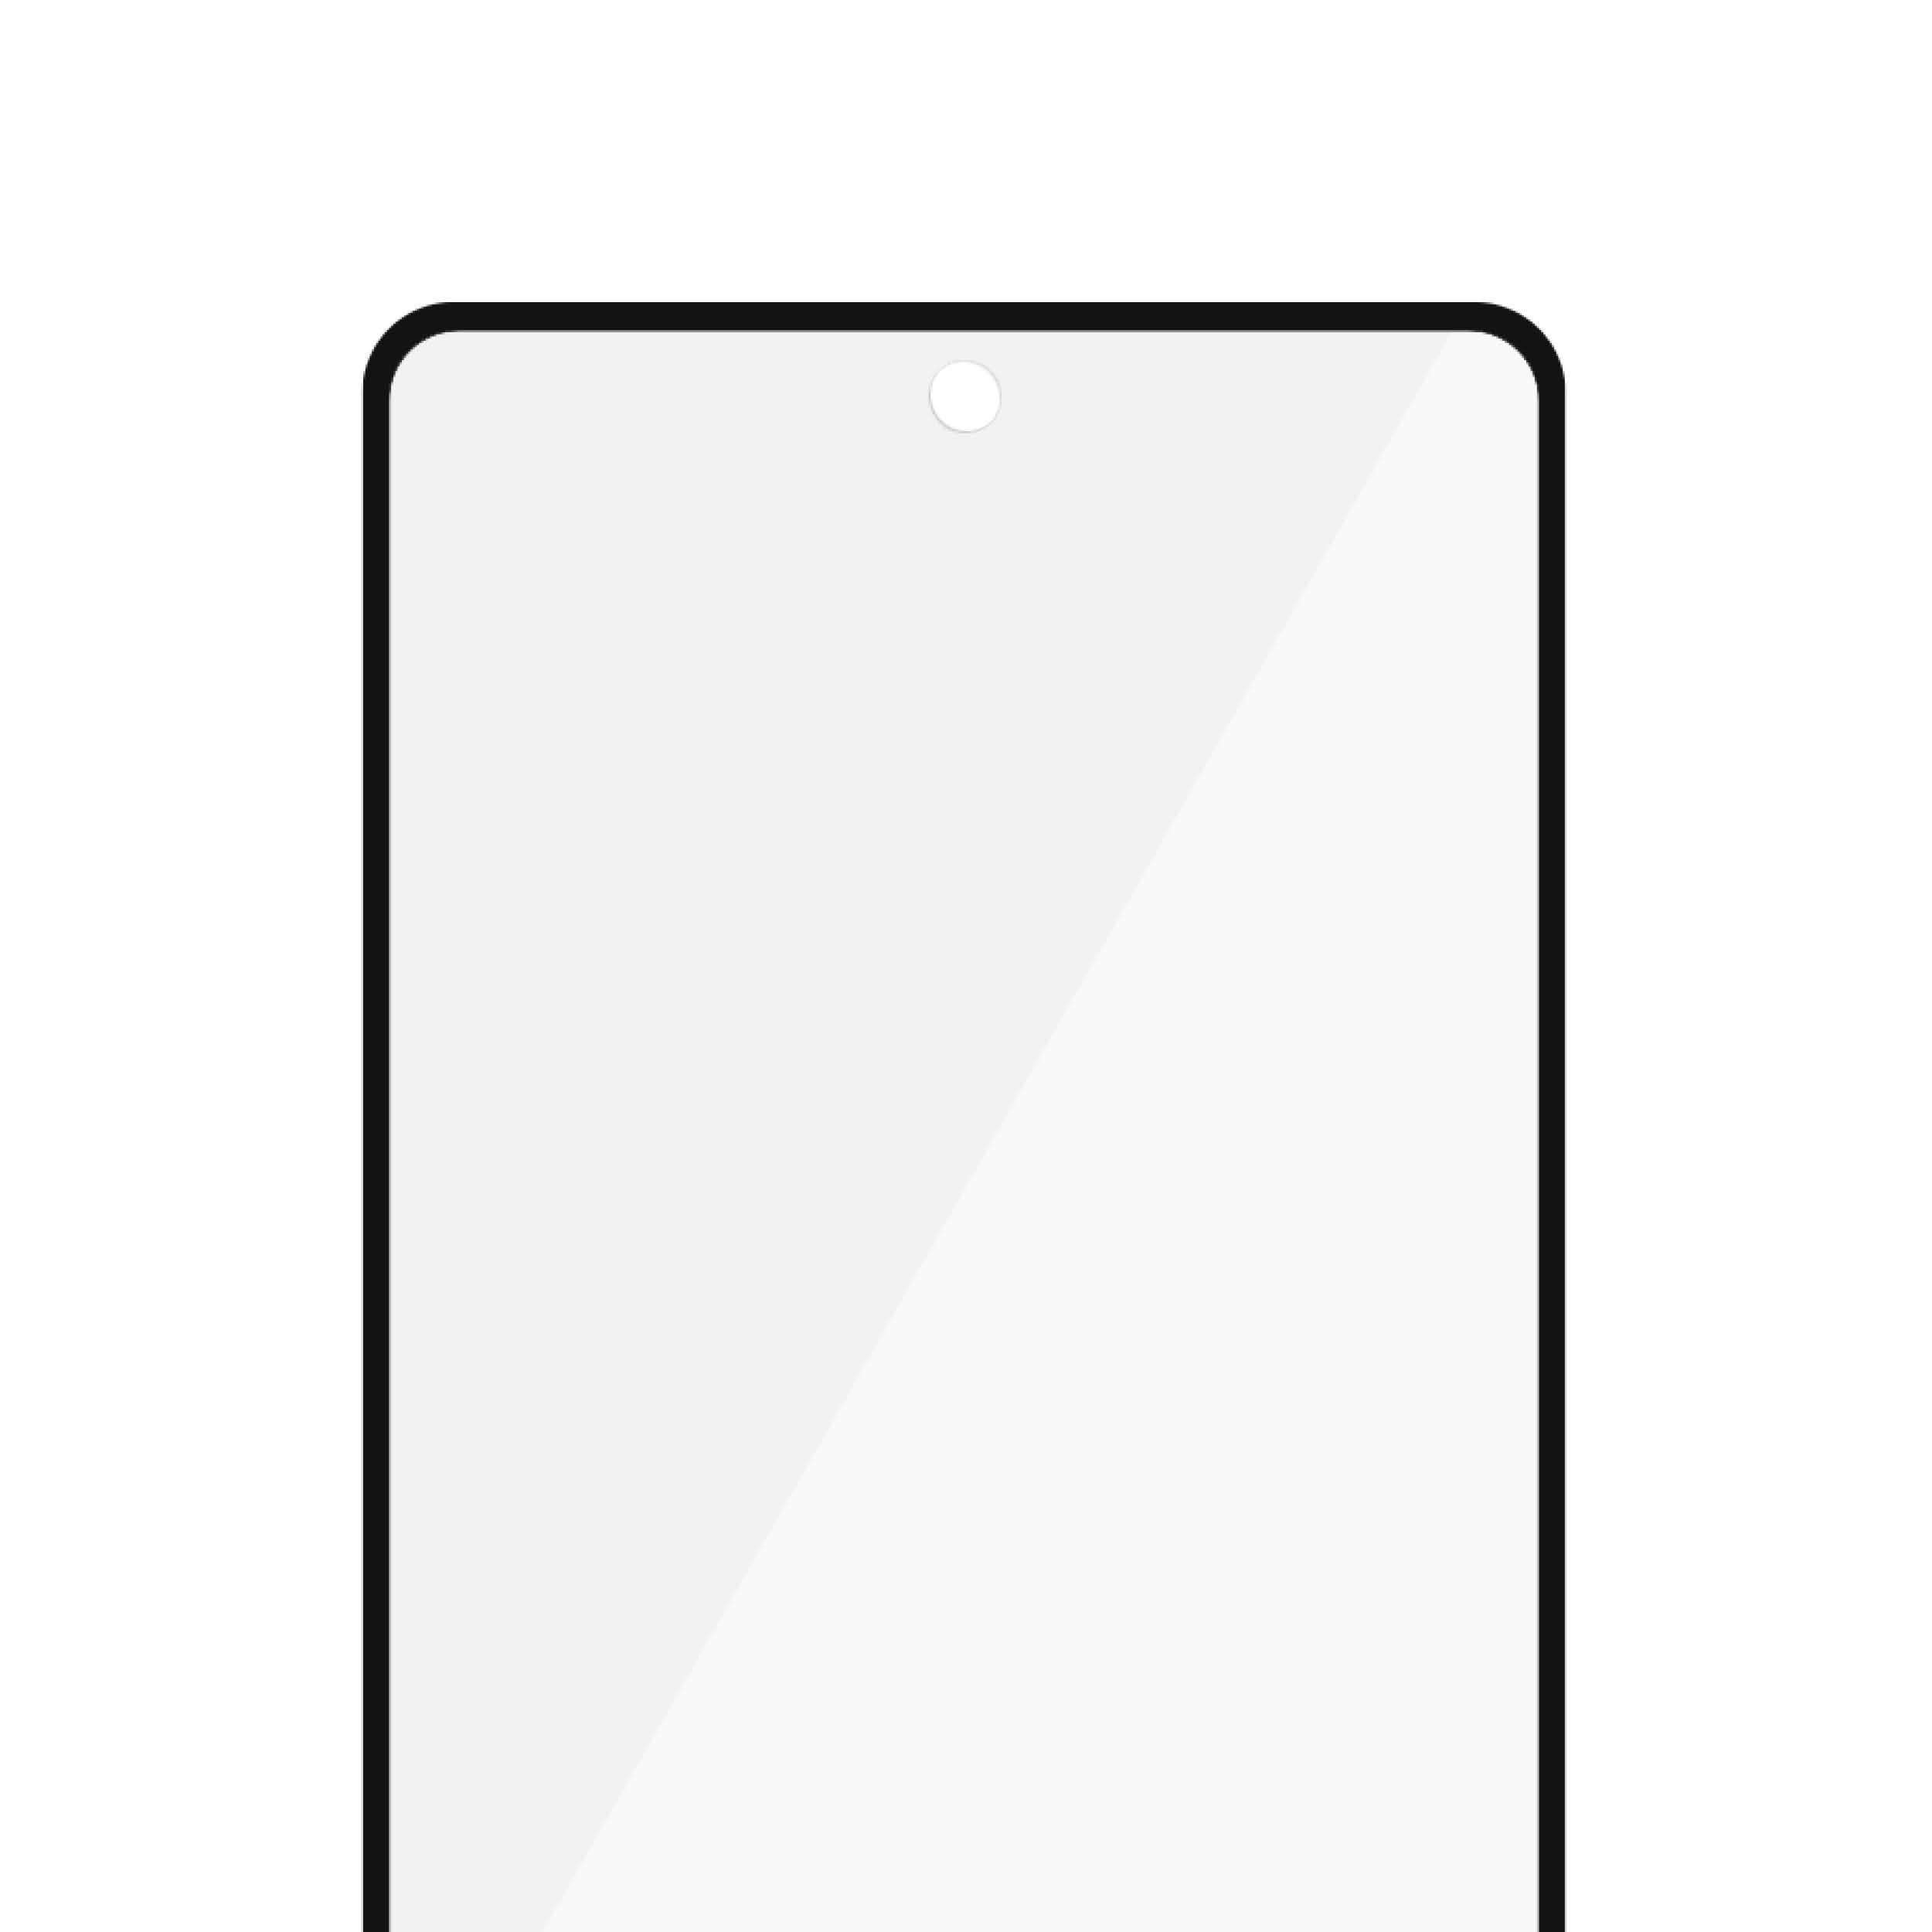 PanzerGlass Samsung Galaxy A52 | A52 5G | A52s 5G | A53 5G | Sticla de protectie pentru ecran thumb